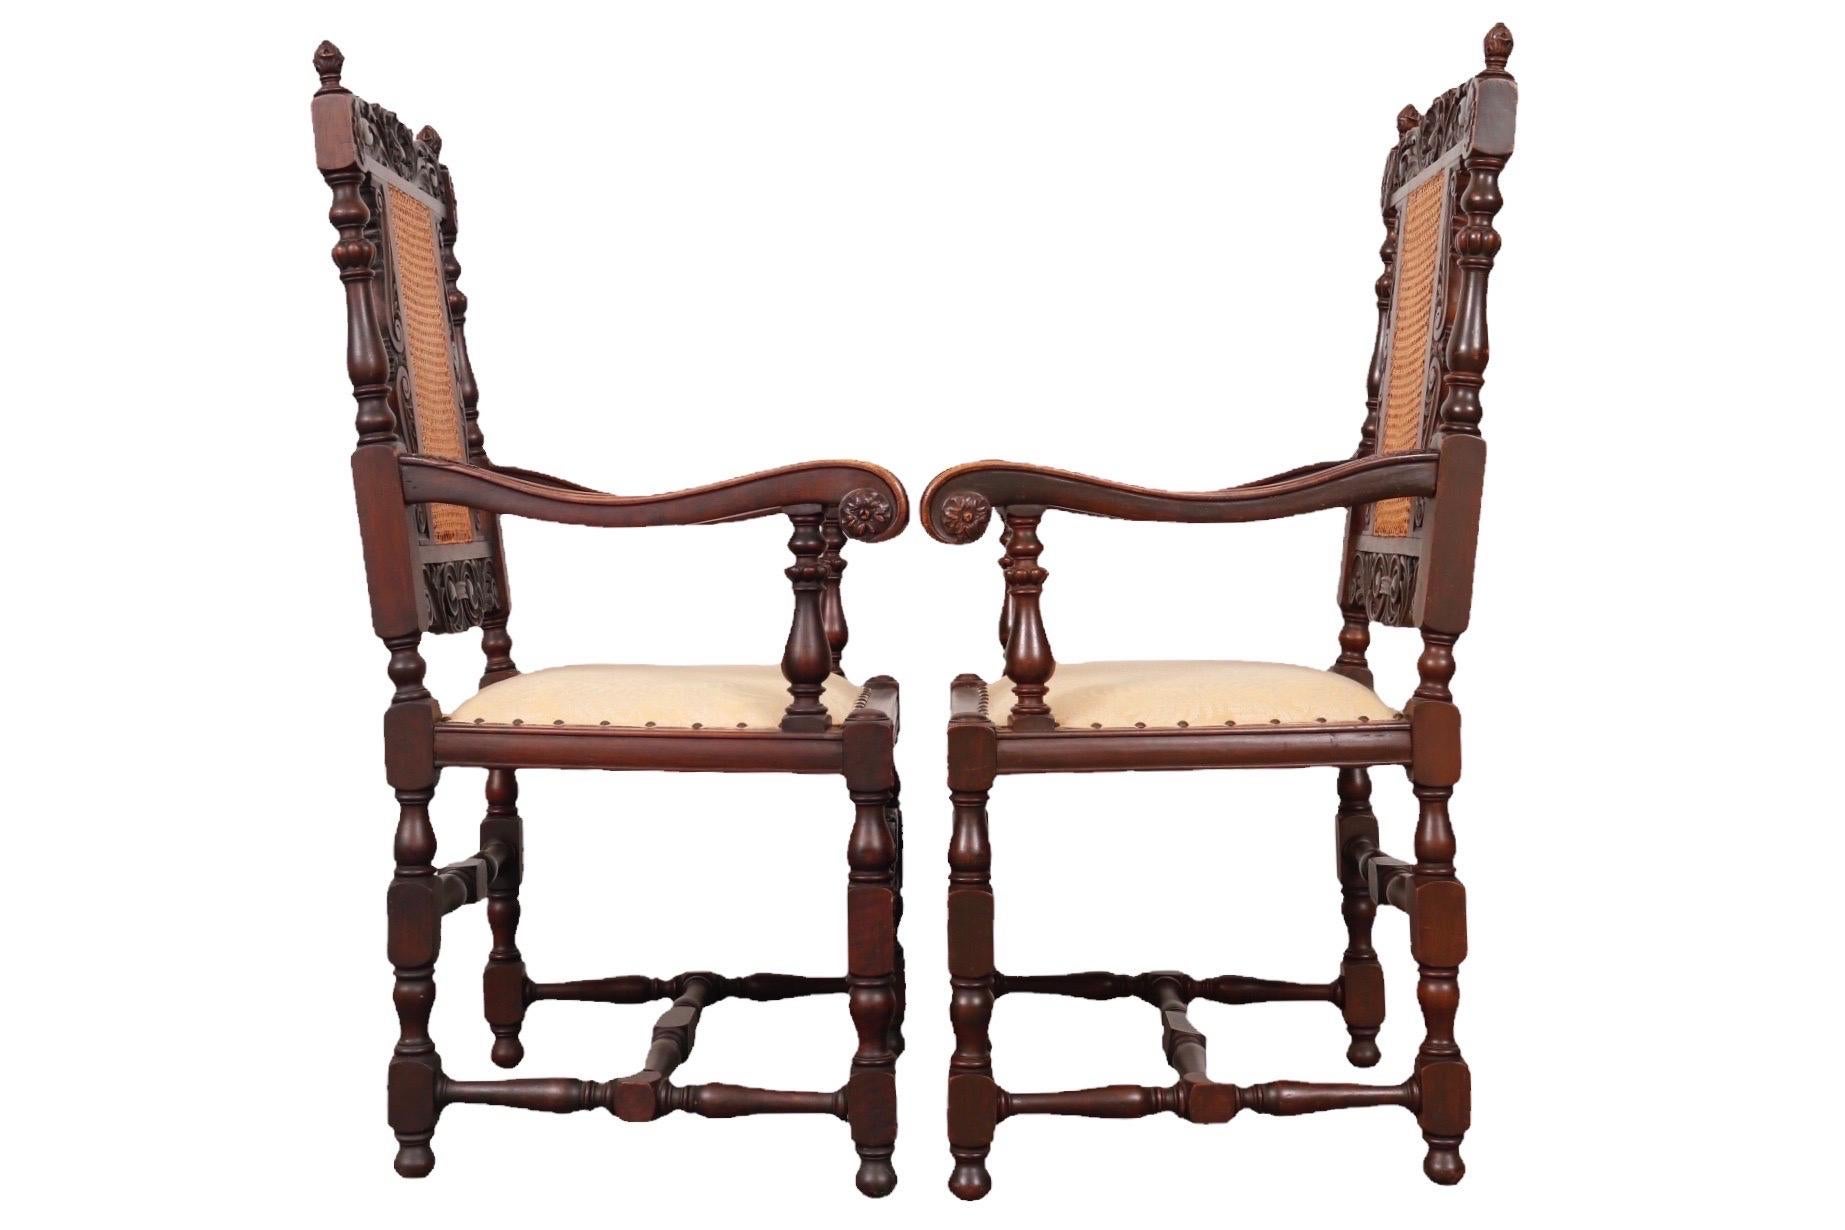 Paire de fauteuils de style jacobéen ornementalement sculptés. Les dossiers sont à double cannelure et surmontés de feuilles d'acanthe enroulées de part et d'autre d'une coquille festonnée centrale. Les sièges carrés sont recouverts d'un damas de